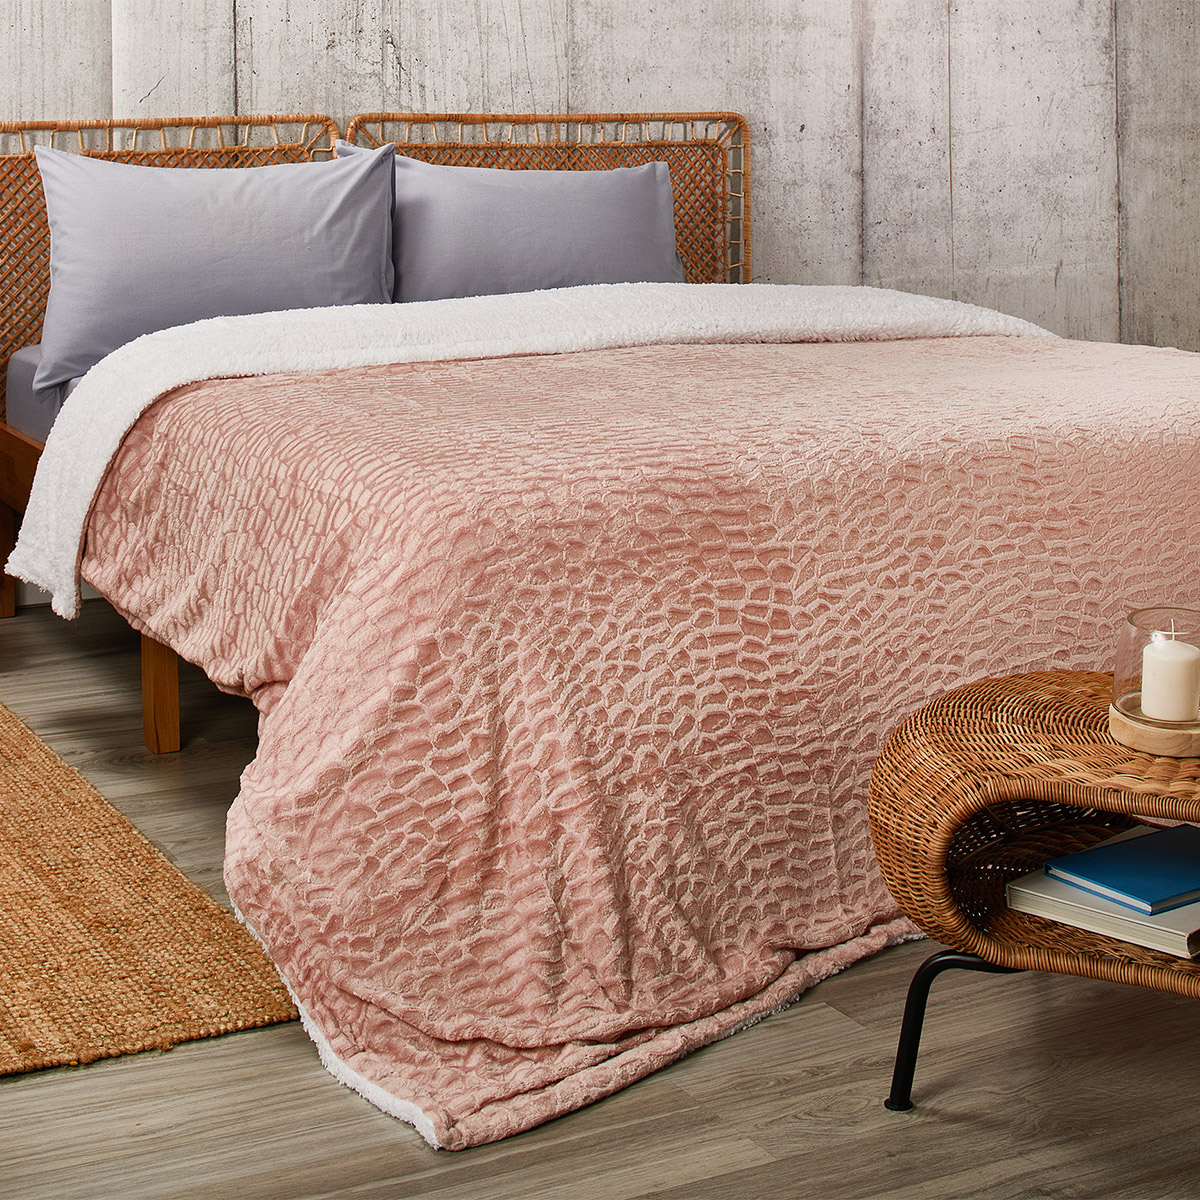 Κουβέρτα Fleece Υπέρδιπλη Με Γουνάκι (220×240) Whitegg KB126-3 Pink 268782